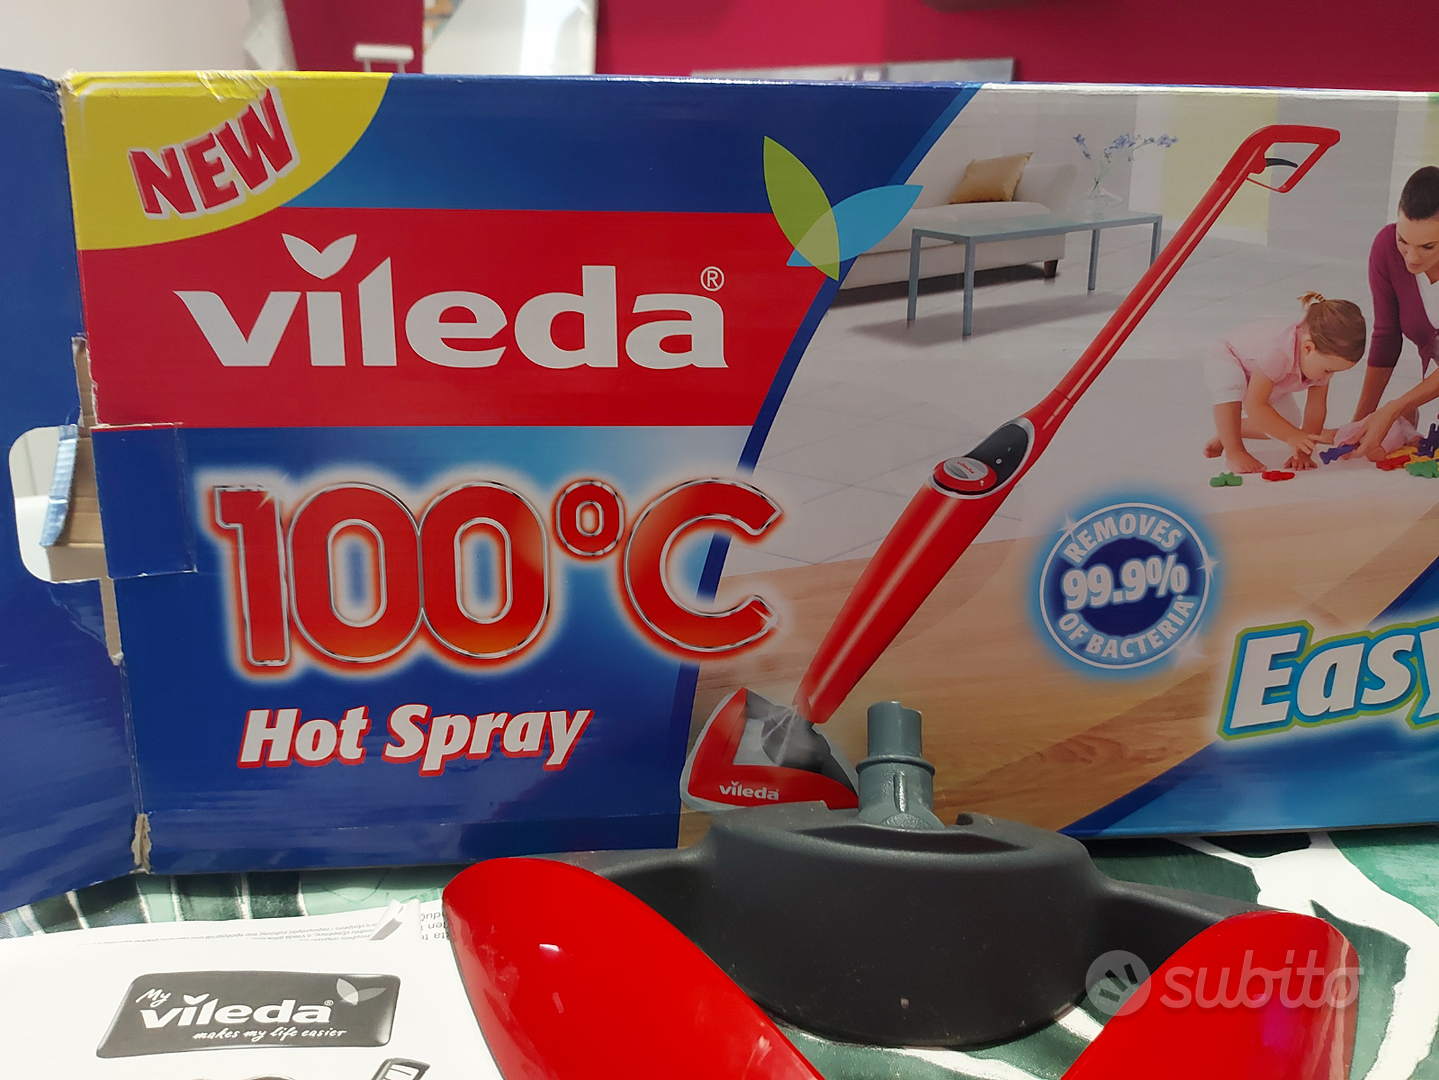 Vileda hot spray 100°C lavapavimenti - Elettrodomestici In vendita a Torino